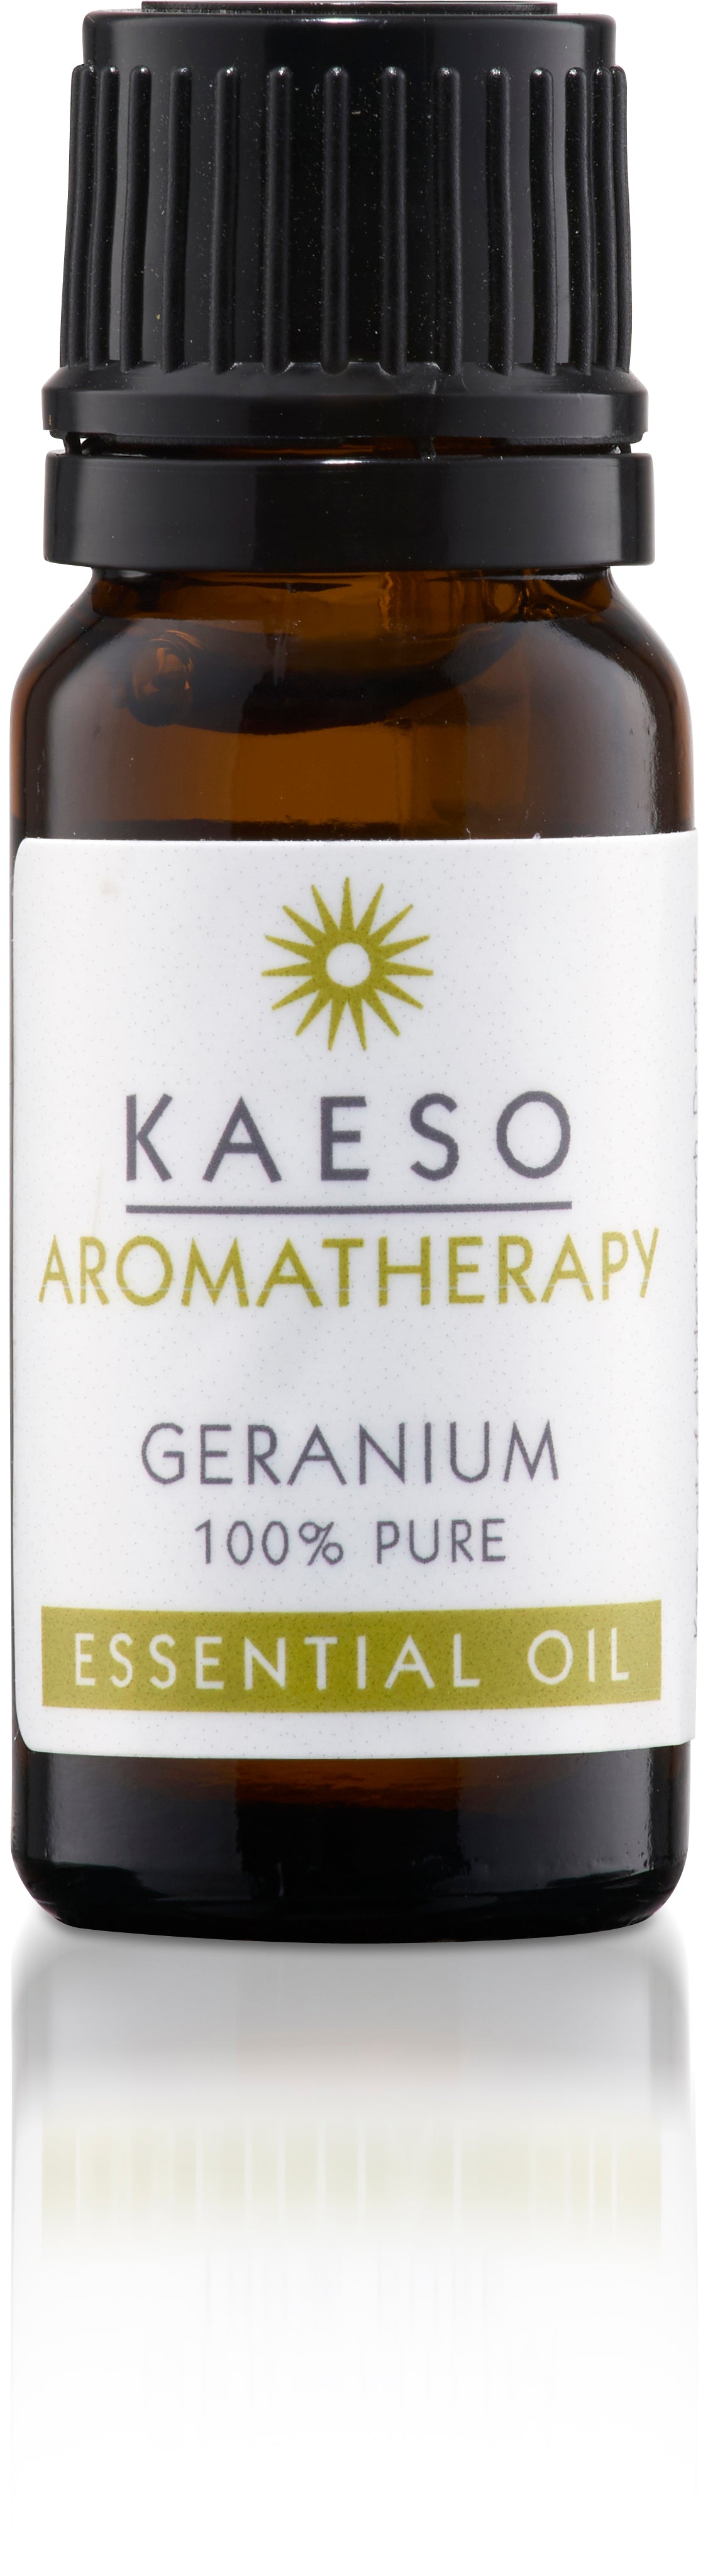 Kaeso Essential Oil Gerranium 10ml